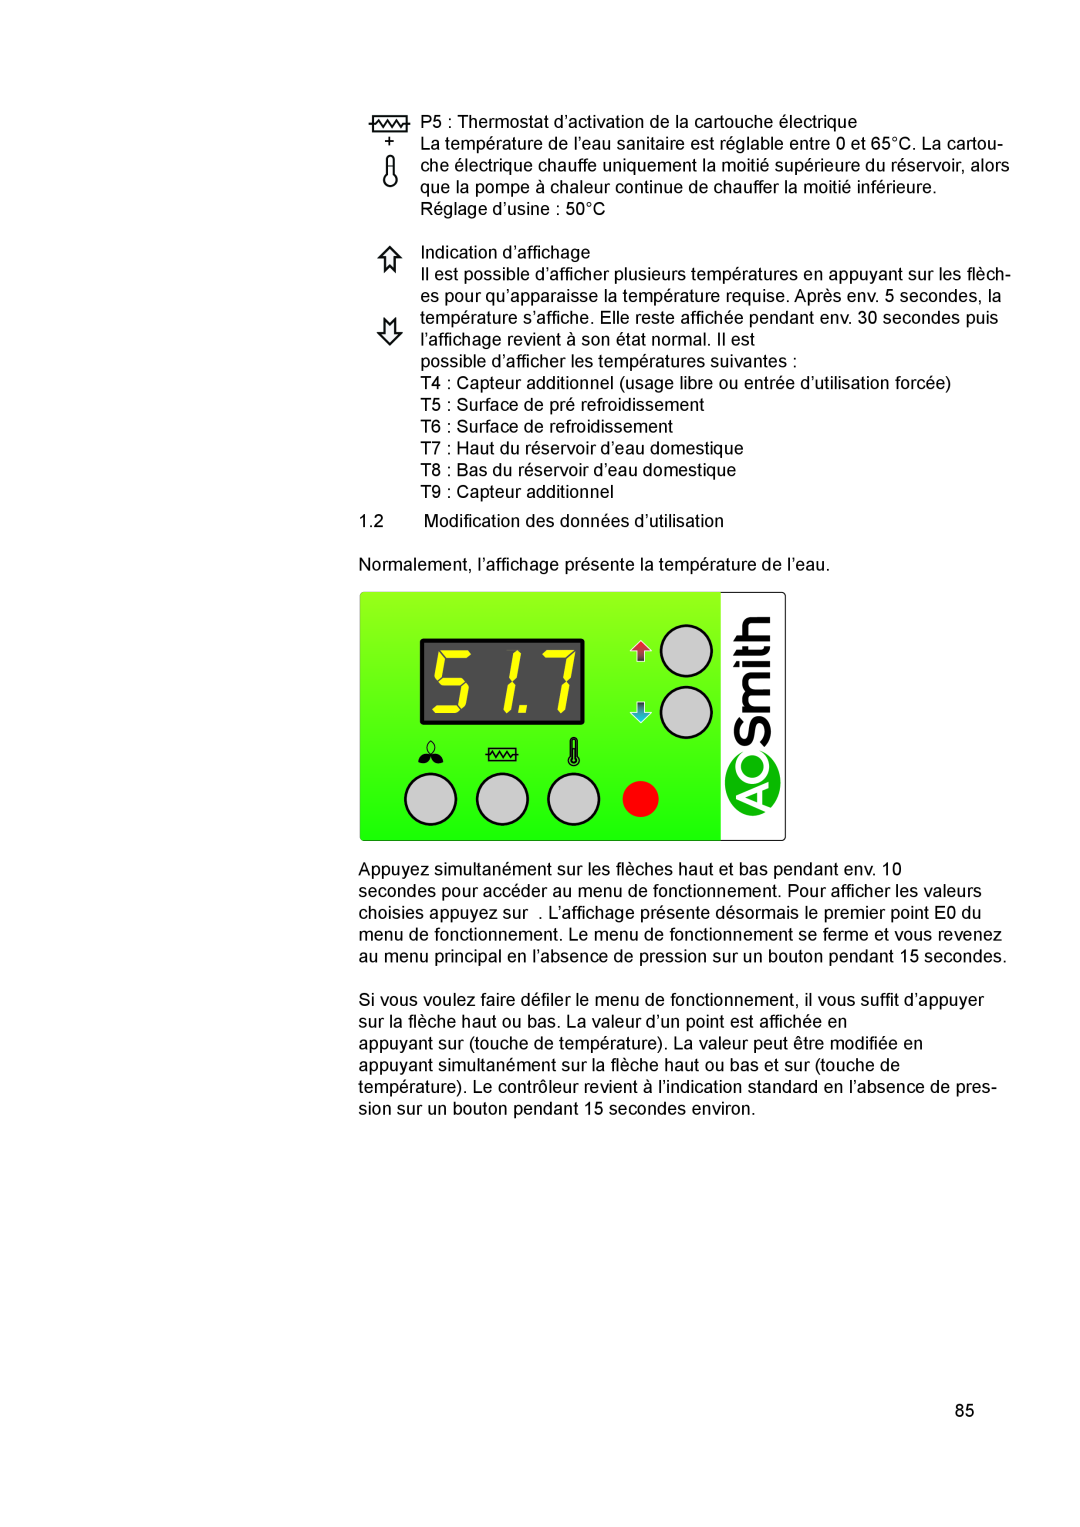 A.O. Smith 290 service manual Réglage d’usine 50C Indication d’affichage, possible d’afficher les températures suivantes 